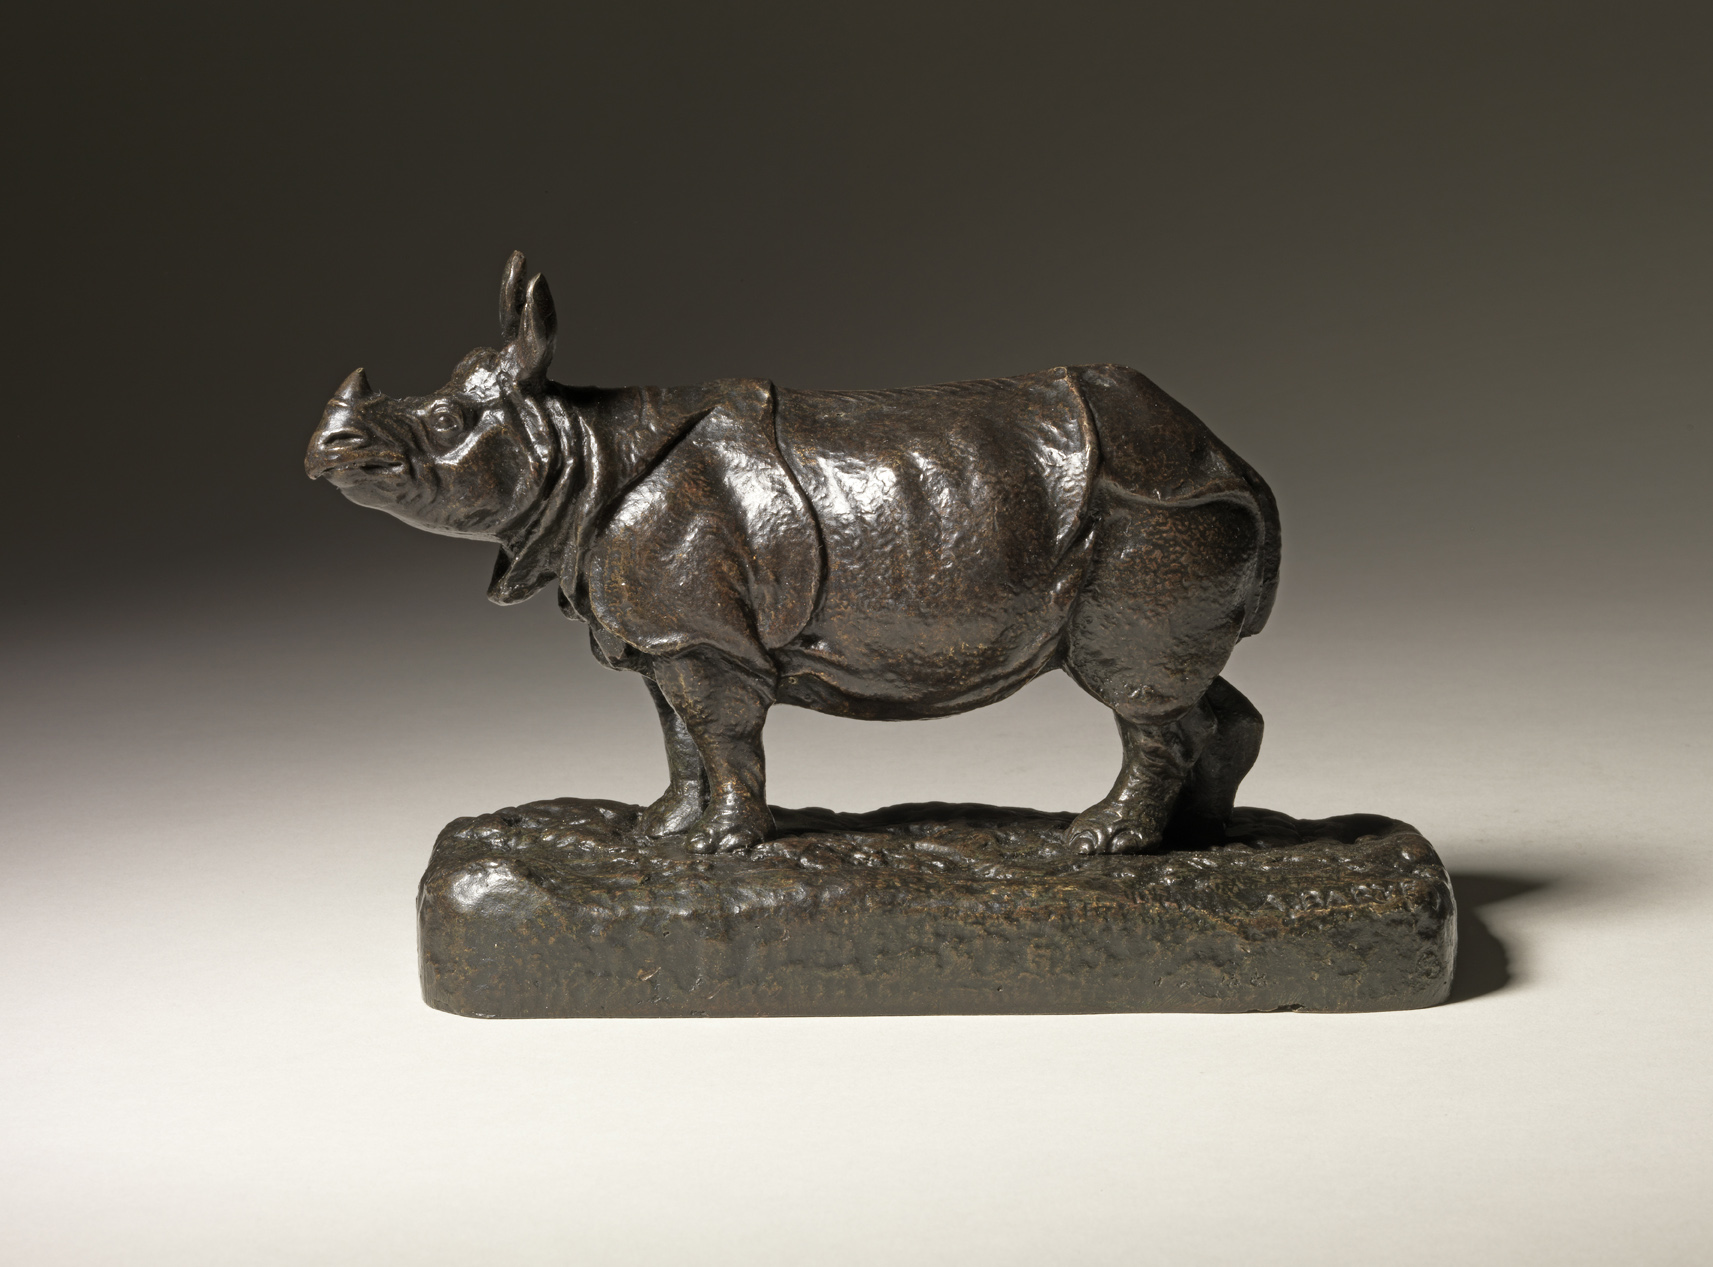 Rhino, c. 1865